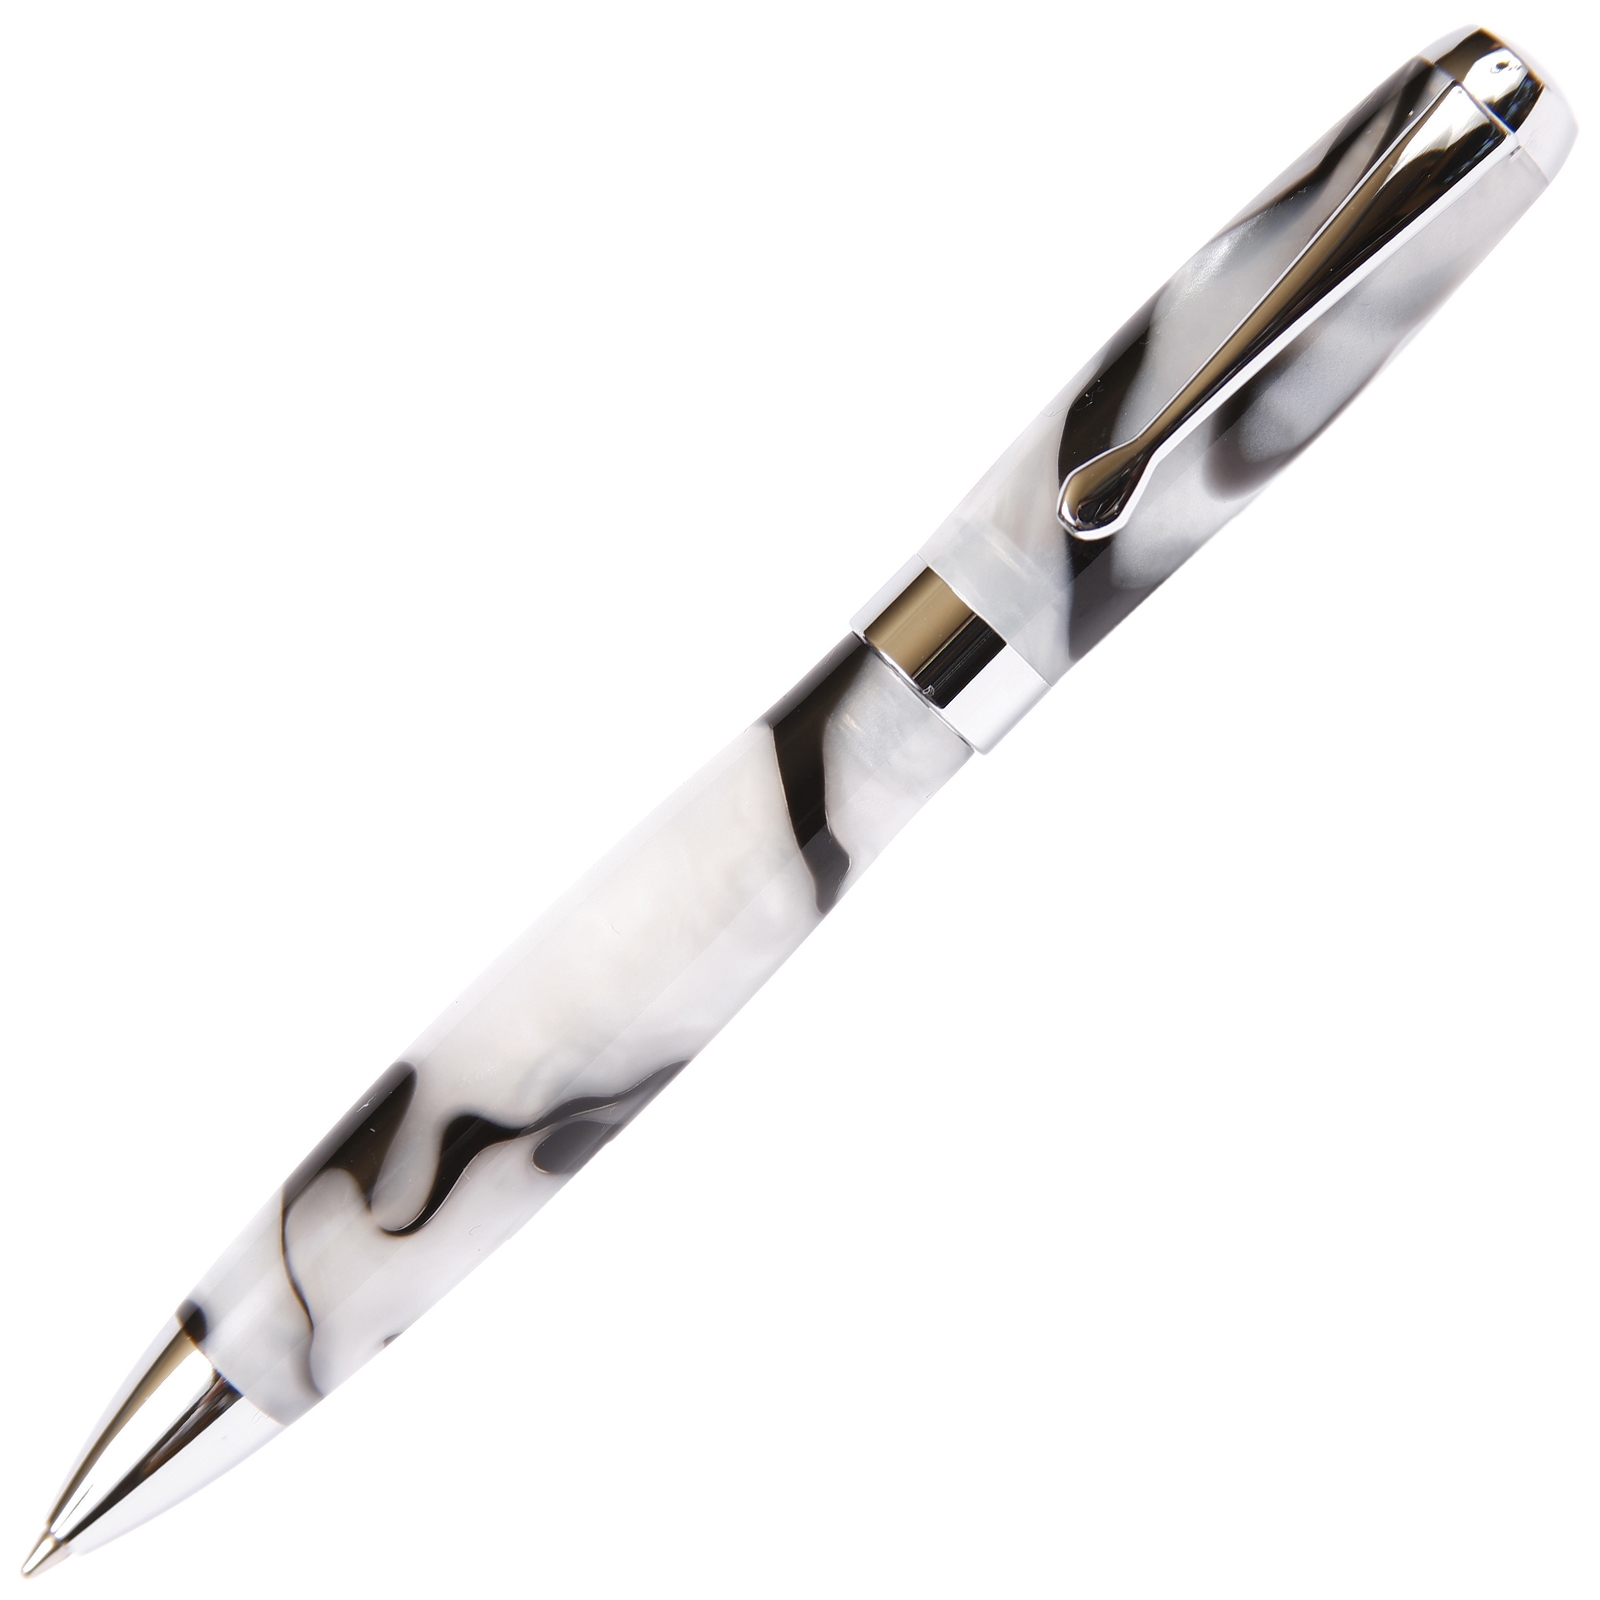 Black & Pearl Marbleized Gloss Body Ballpoint Pen by Lanier Pens